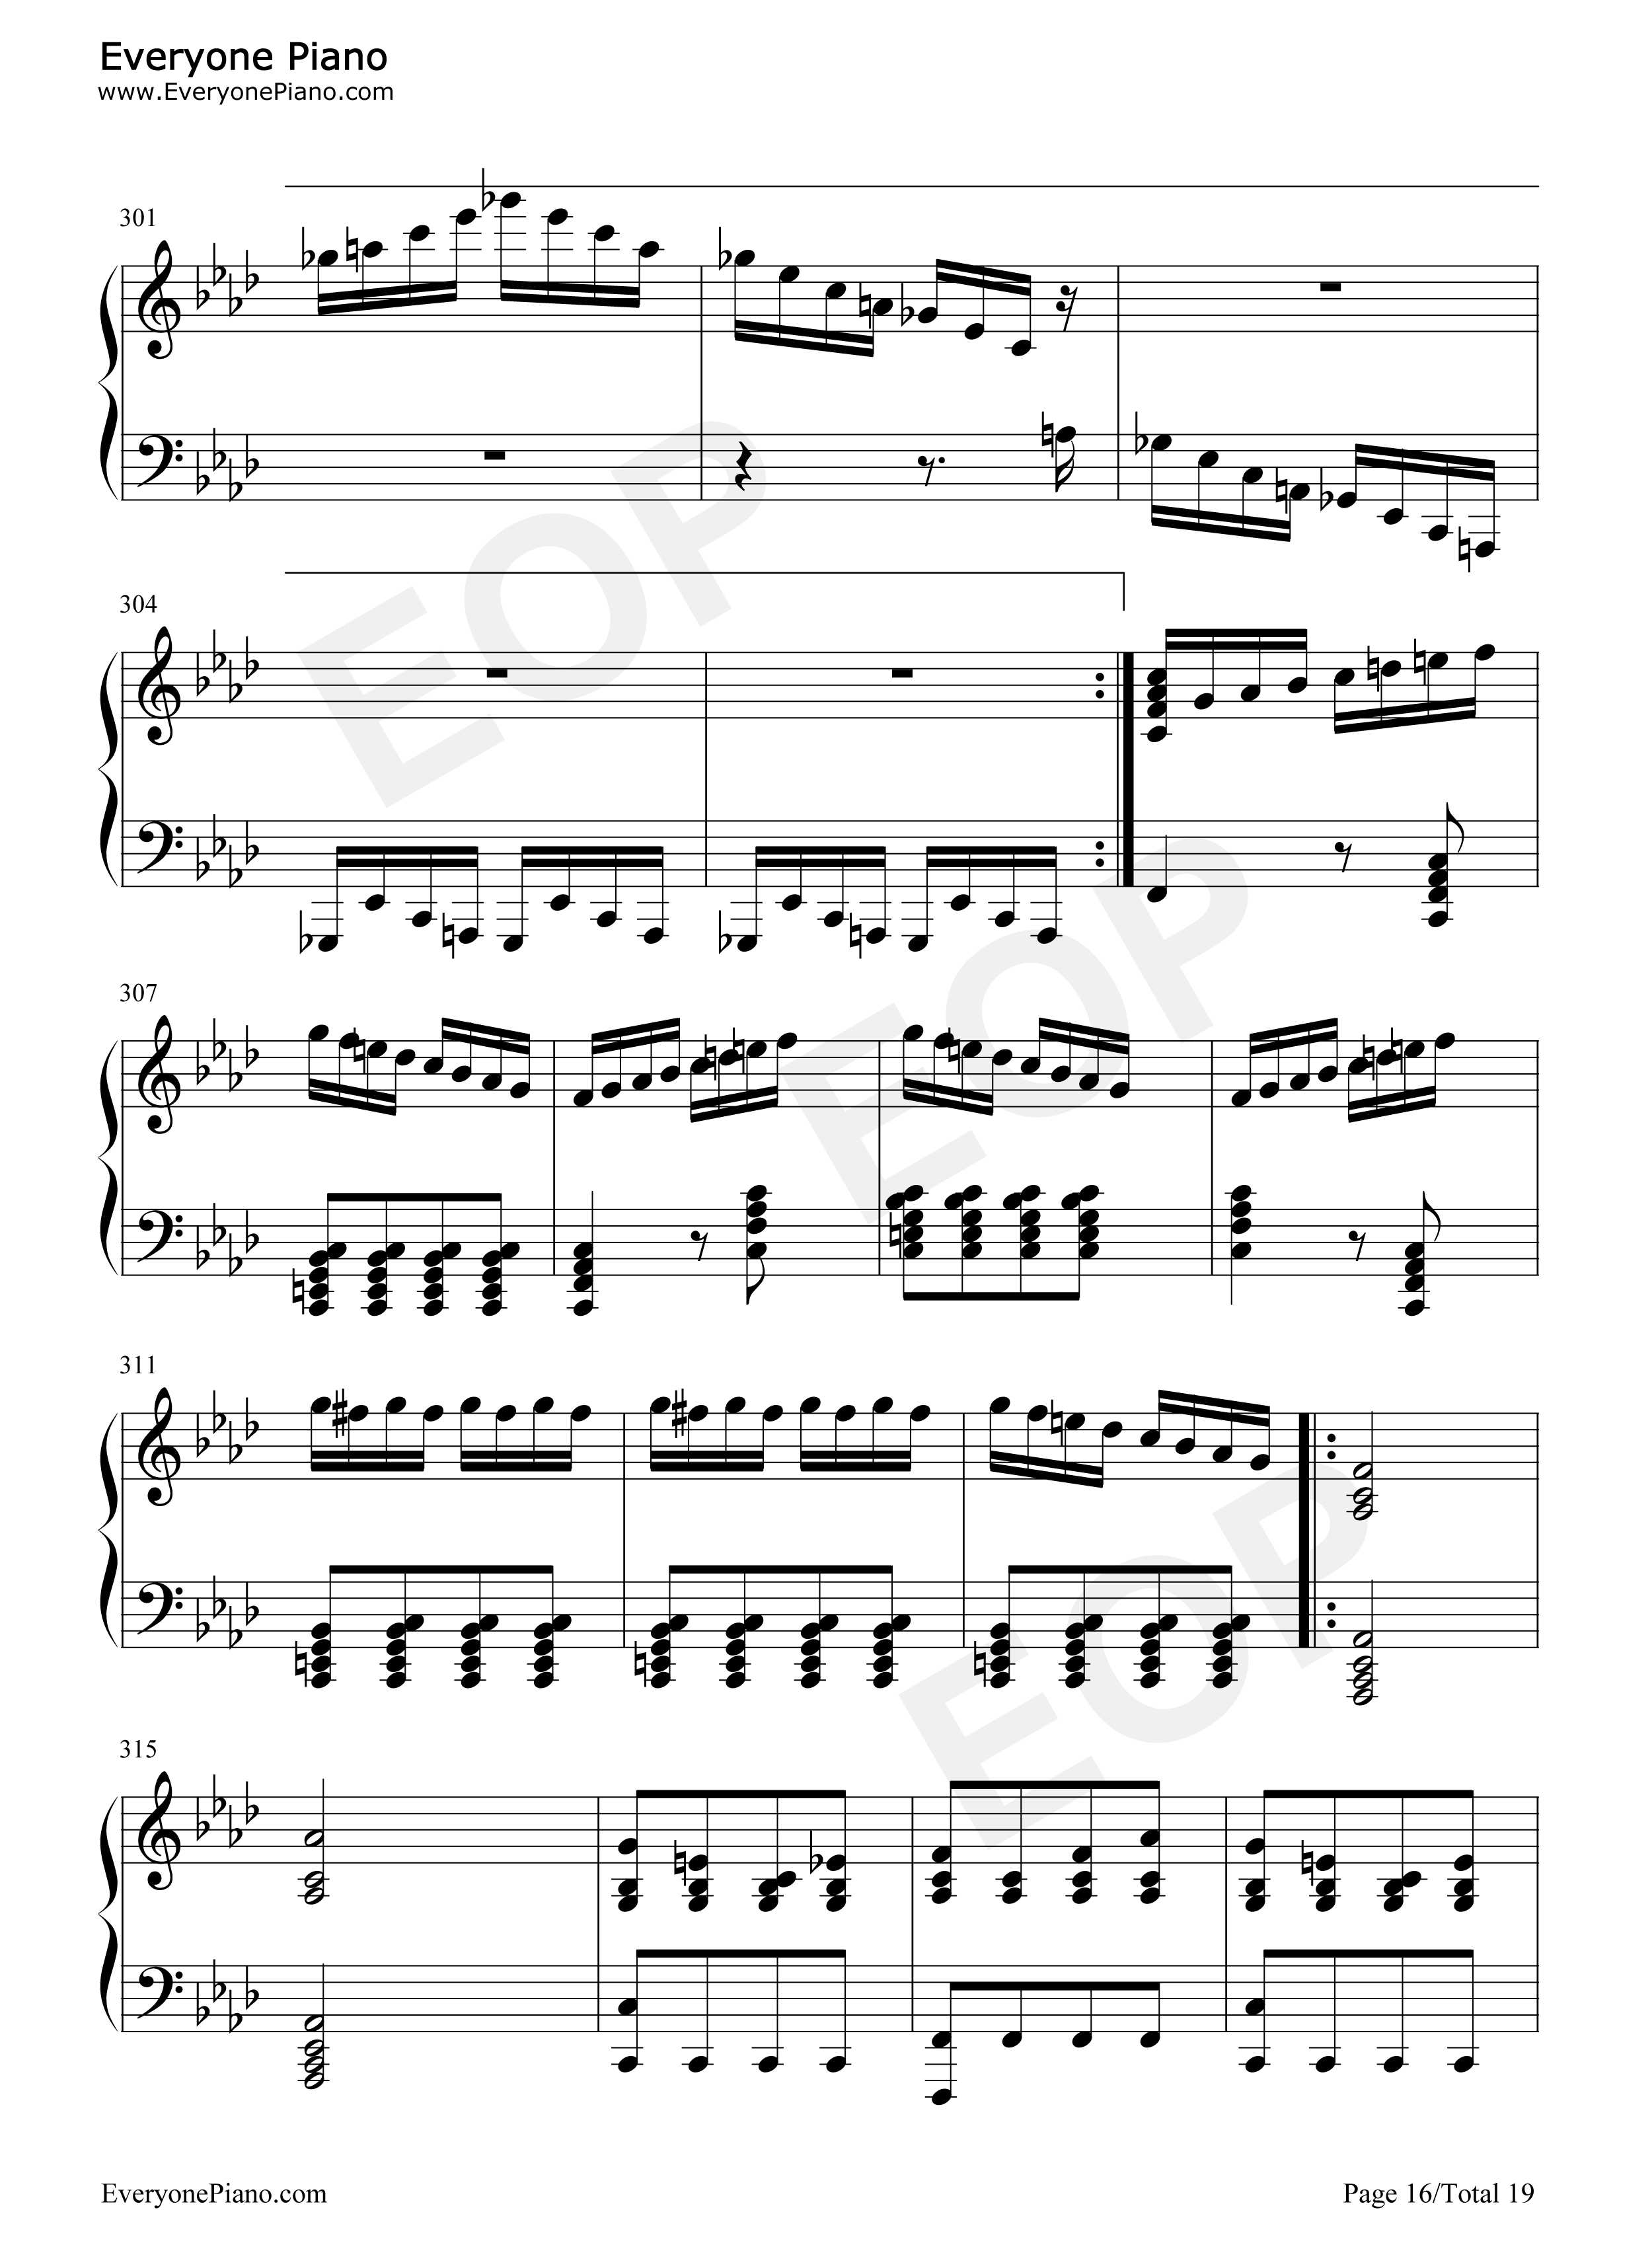 热情奏鸣曲第3乐章-第23钢琴奏鸣曲-贝多芬五线谱预览16